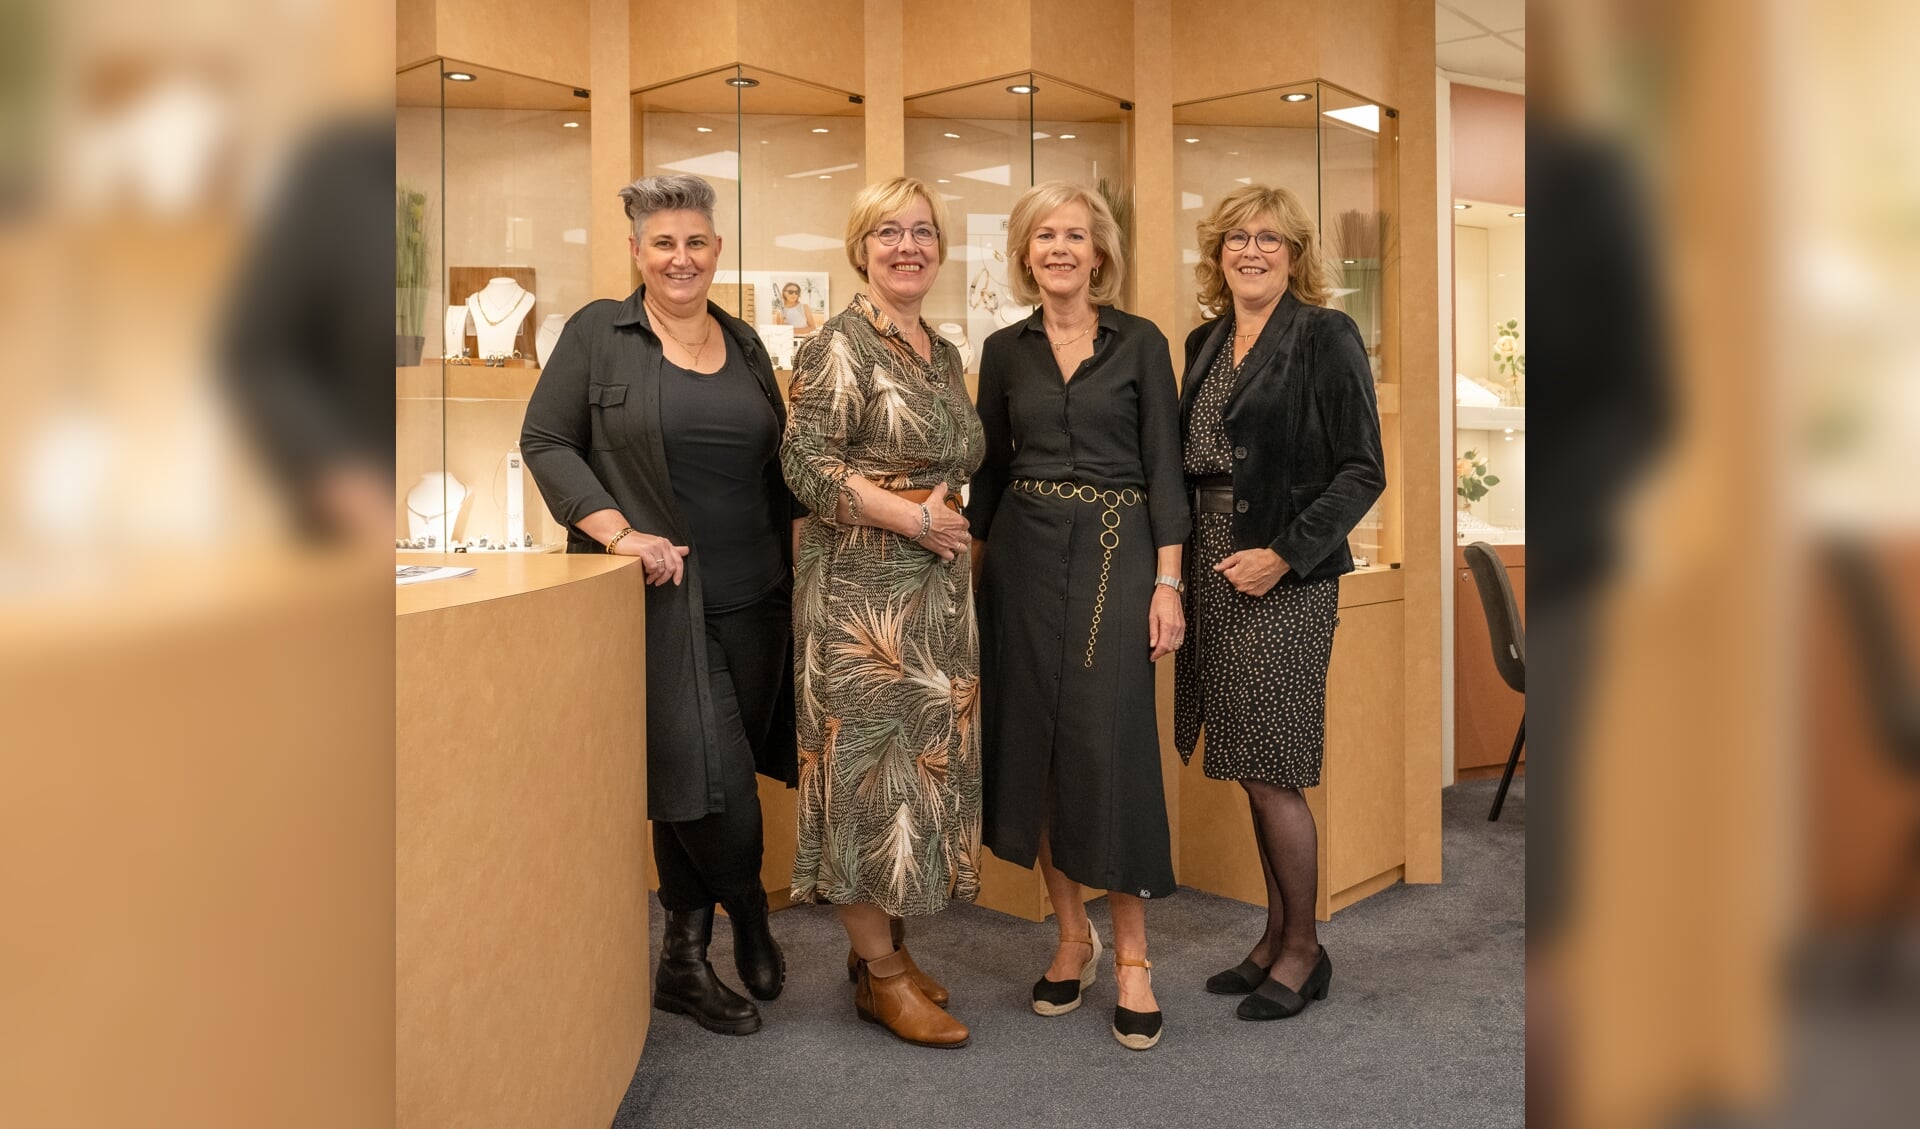 Juwelier Meerdink. Van links naar rechts: Karin Meerdink, Joke Woordes, Andrea Elferink, Ria Lubbers. Foto: PR Meerdink